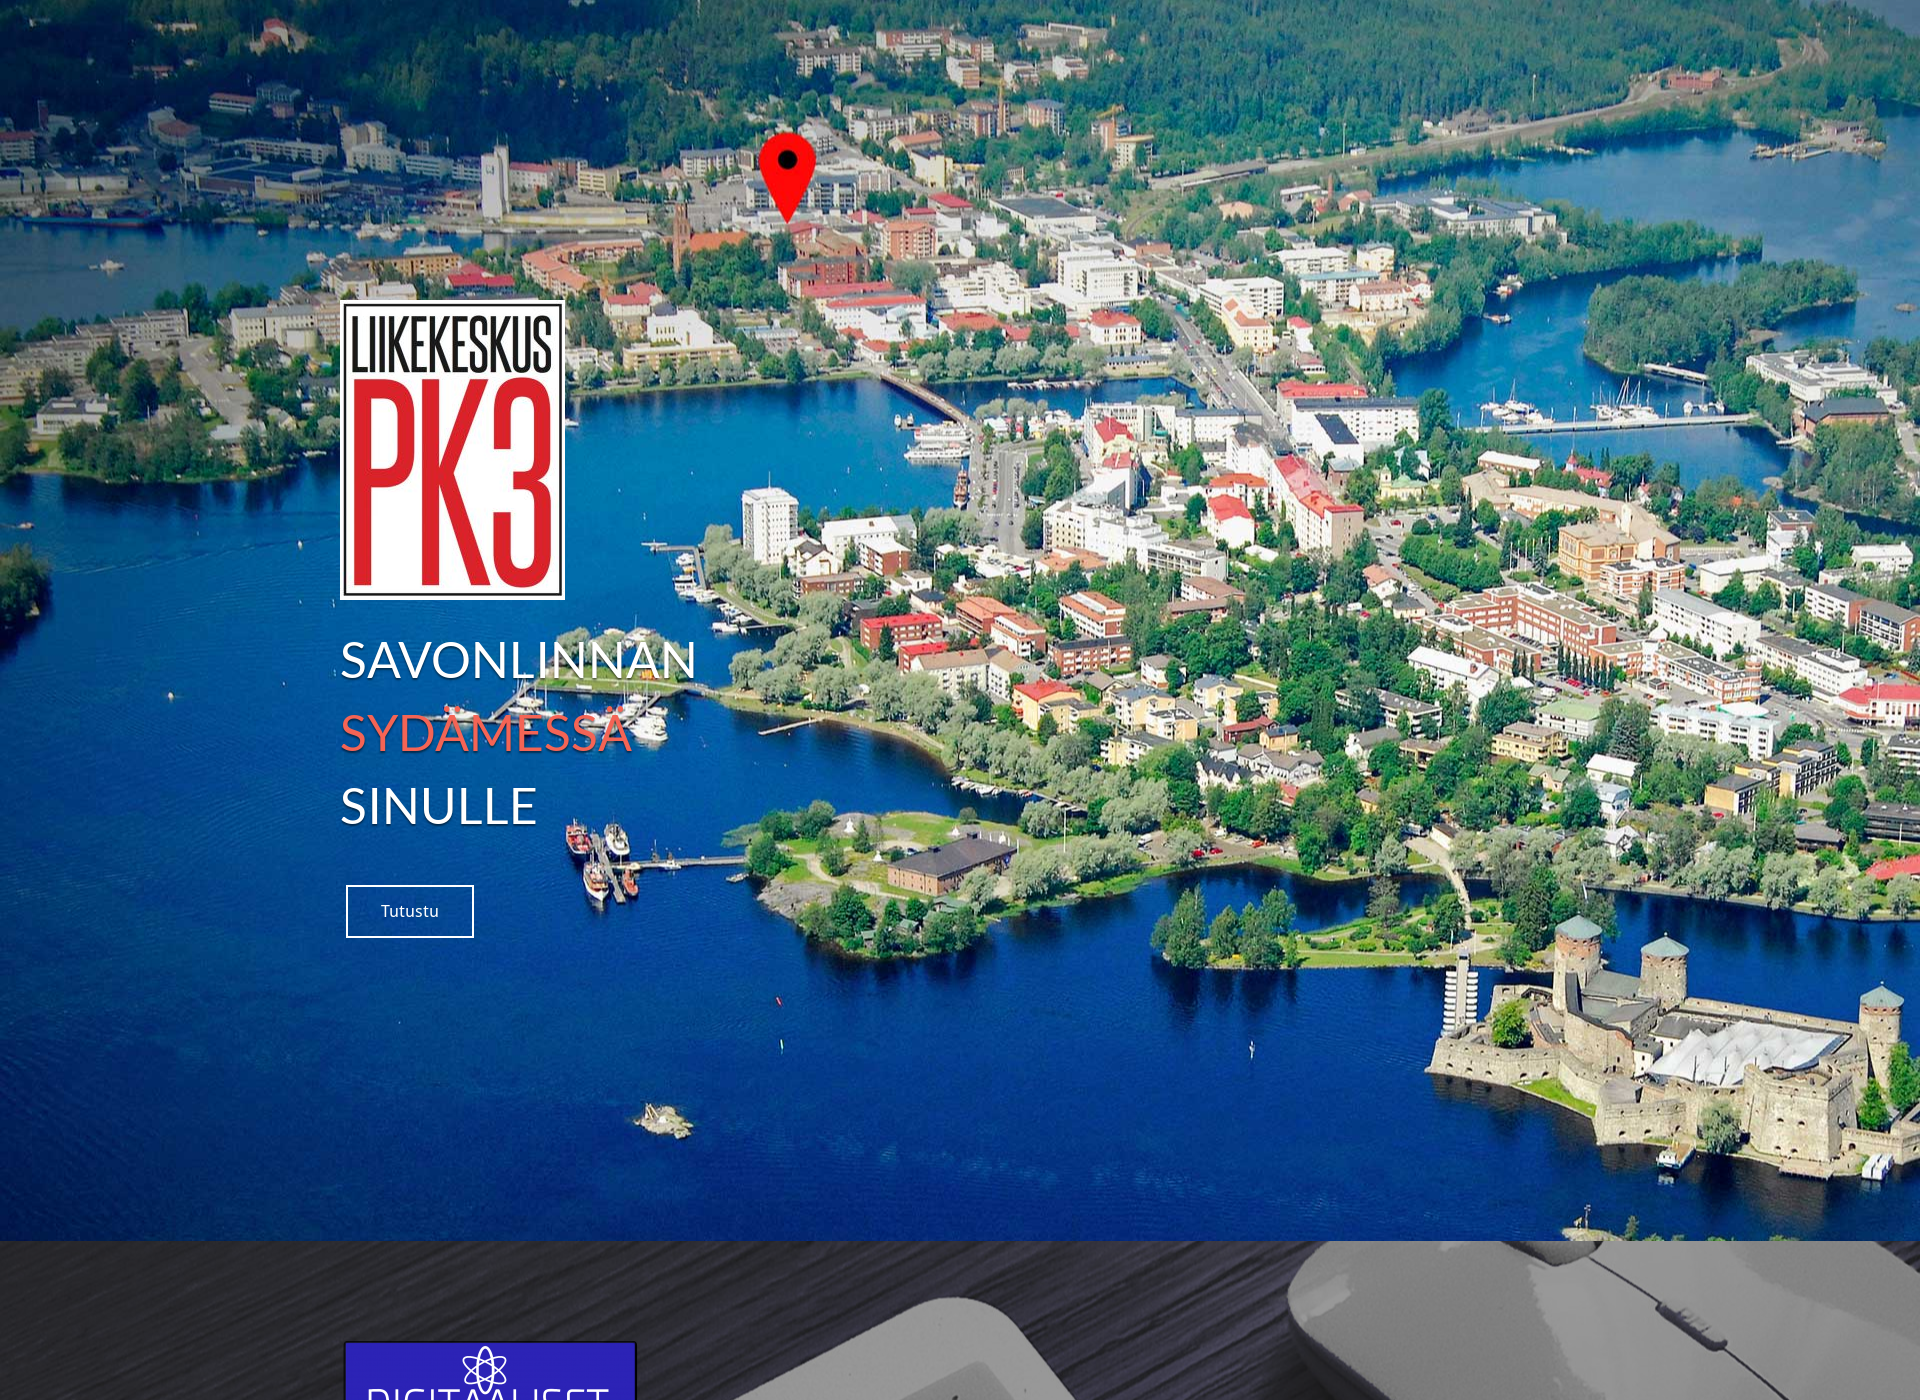 Screenshot for pk3.fi